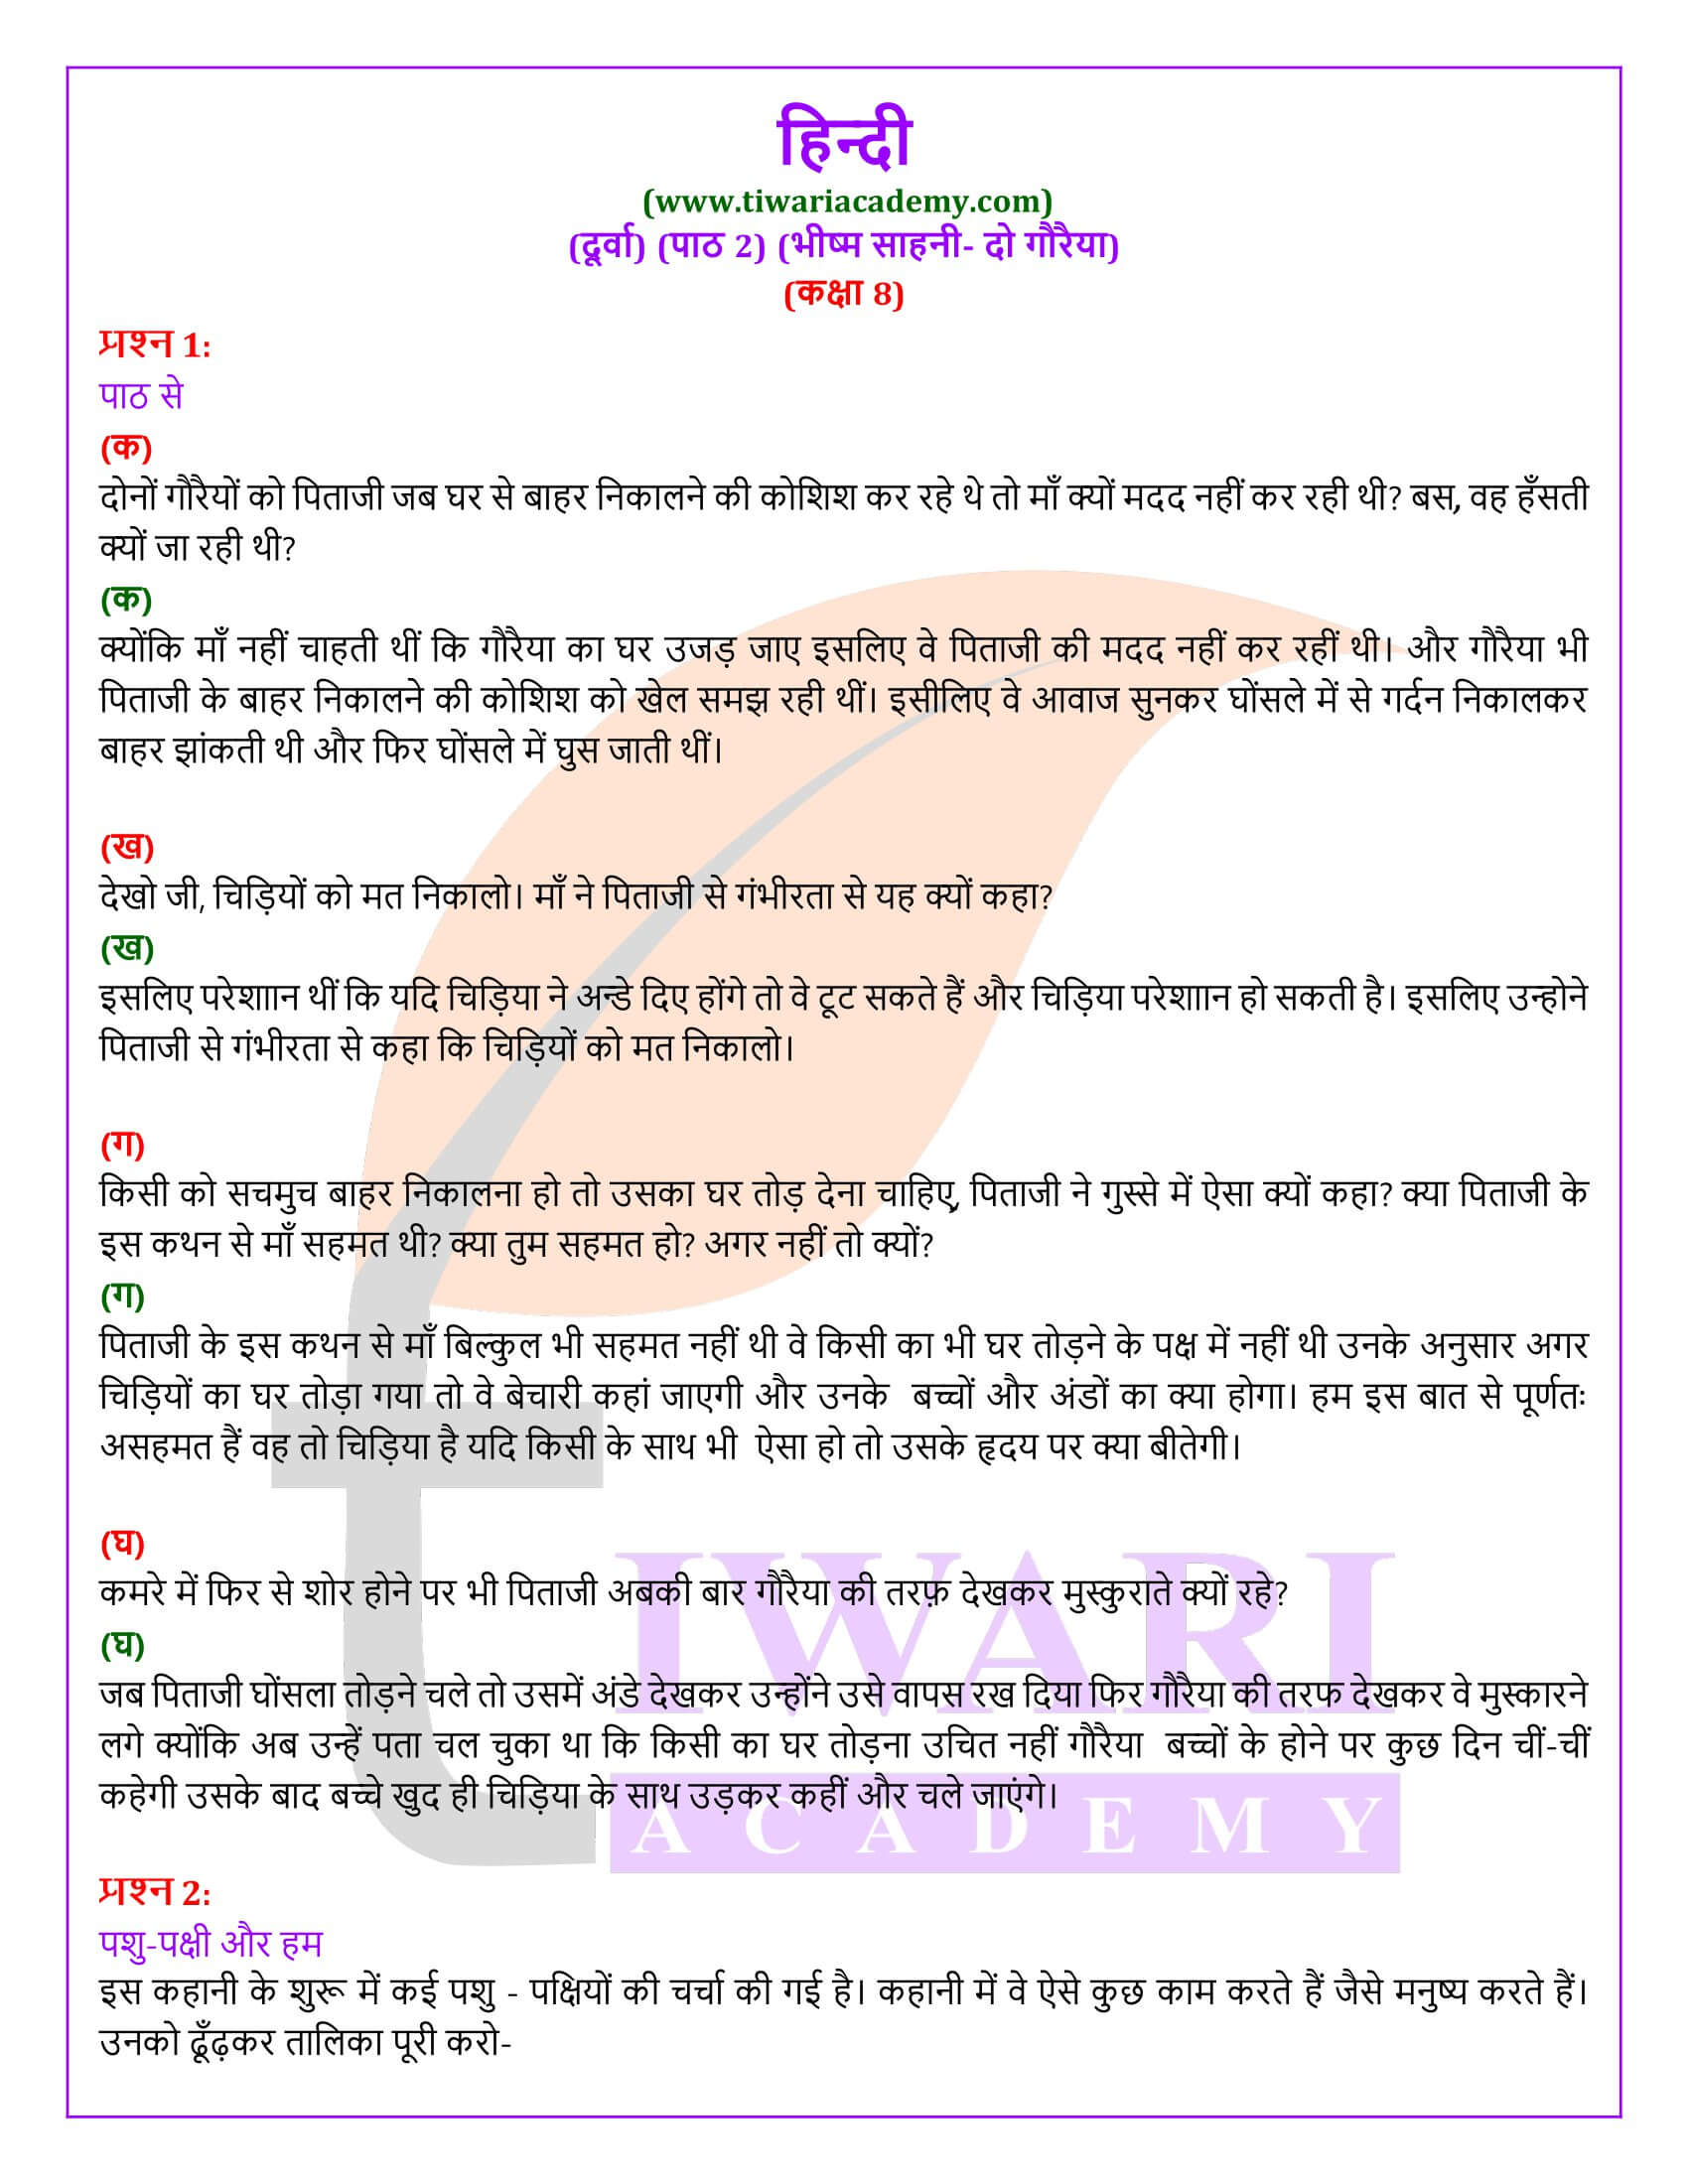 एनसीईआरटी समाधान कक्षा 8 हिंदी दूर्वा अध्याय 2 दो गौरैया